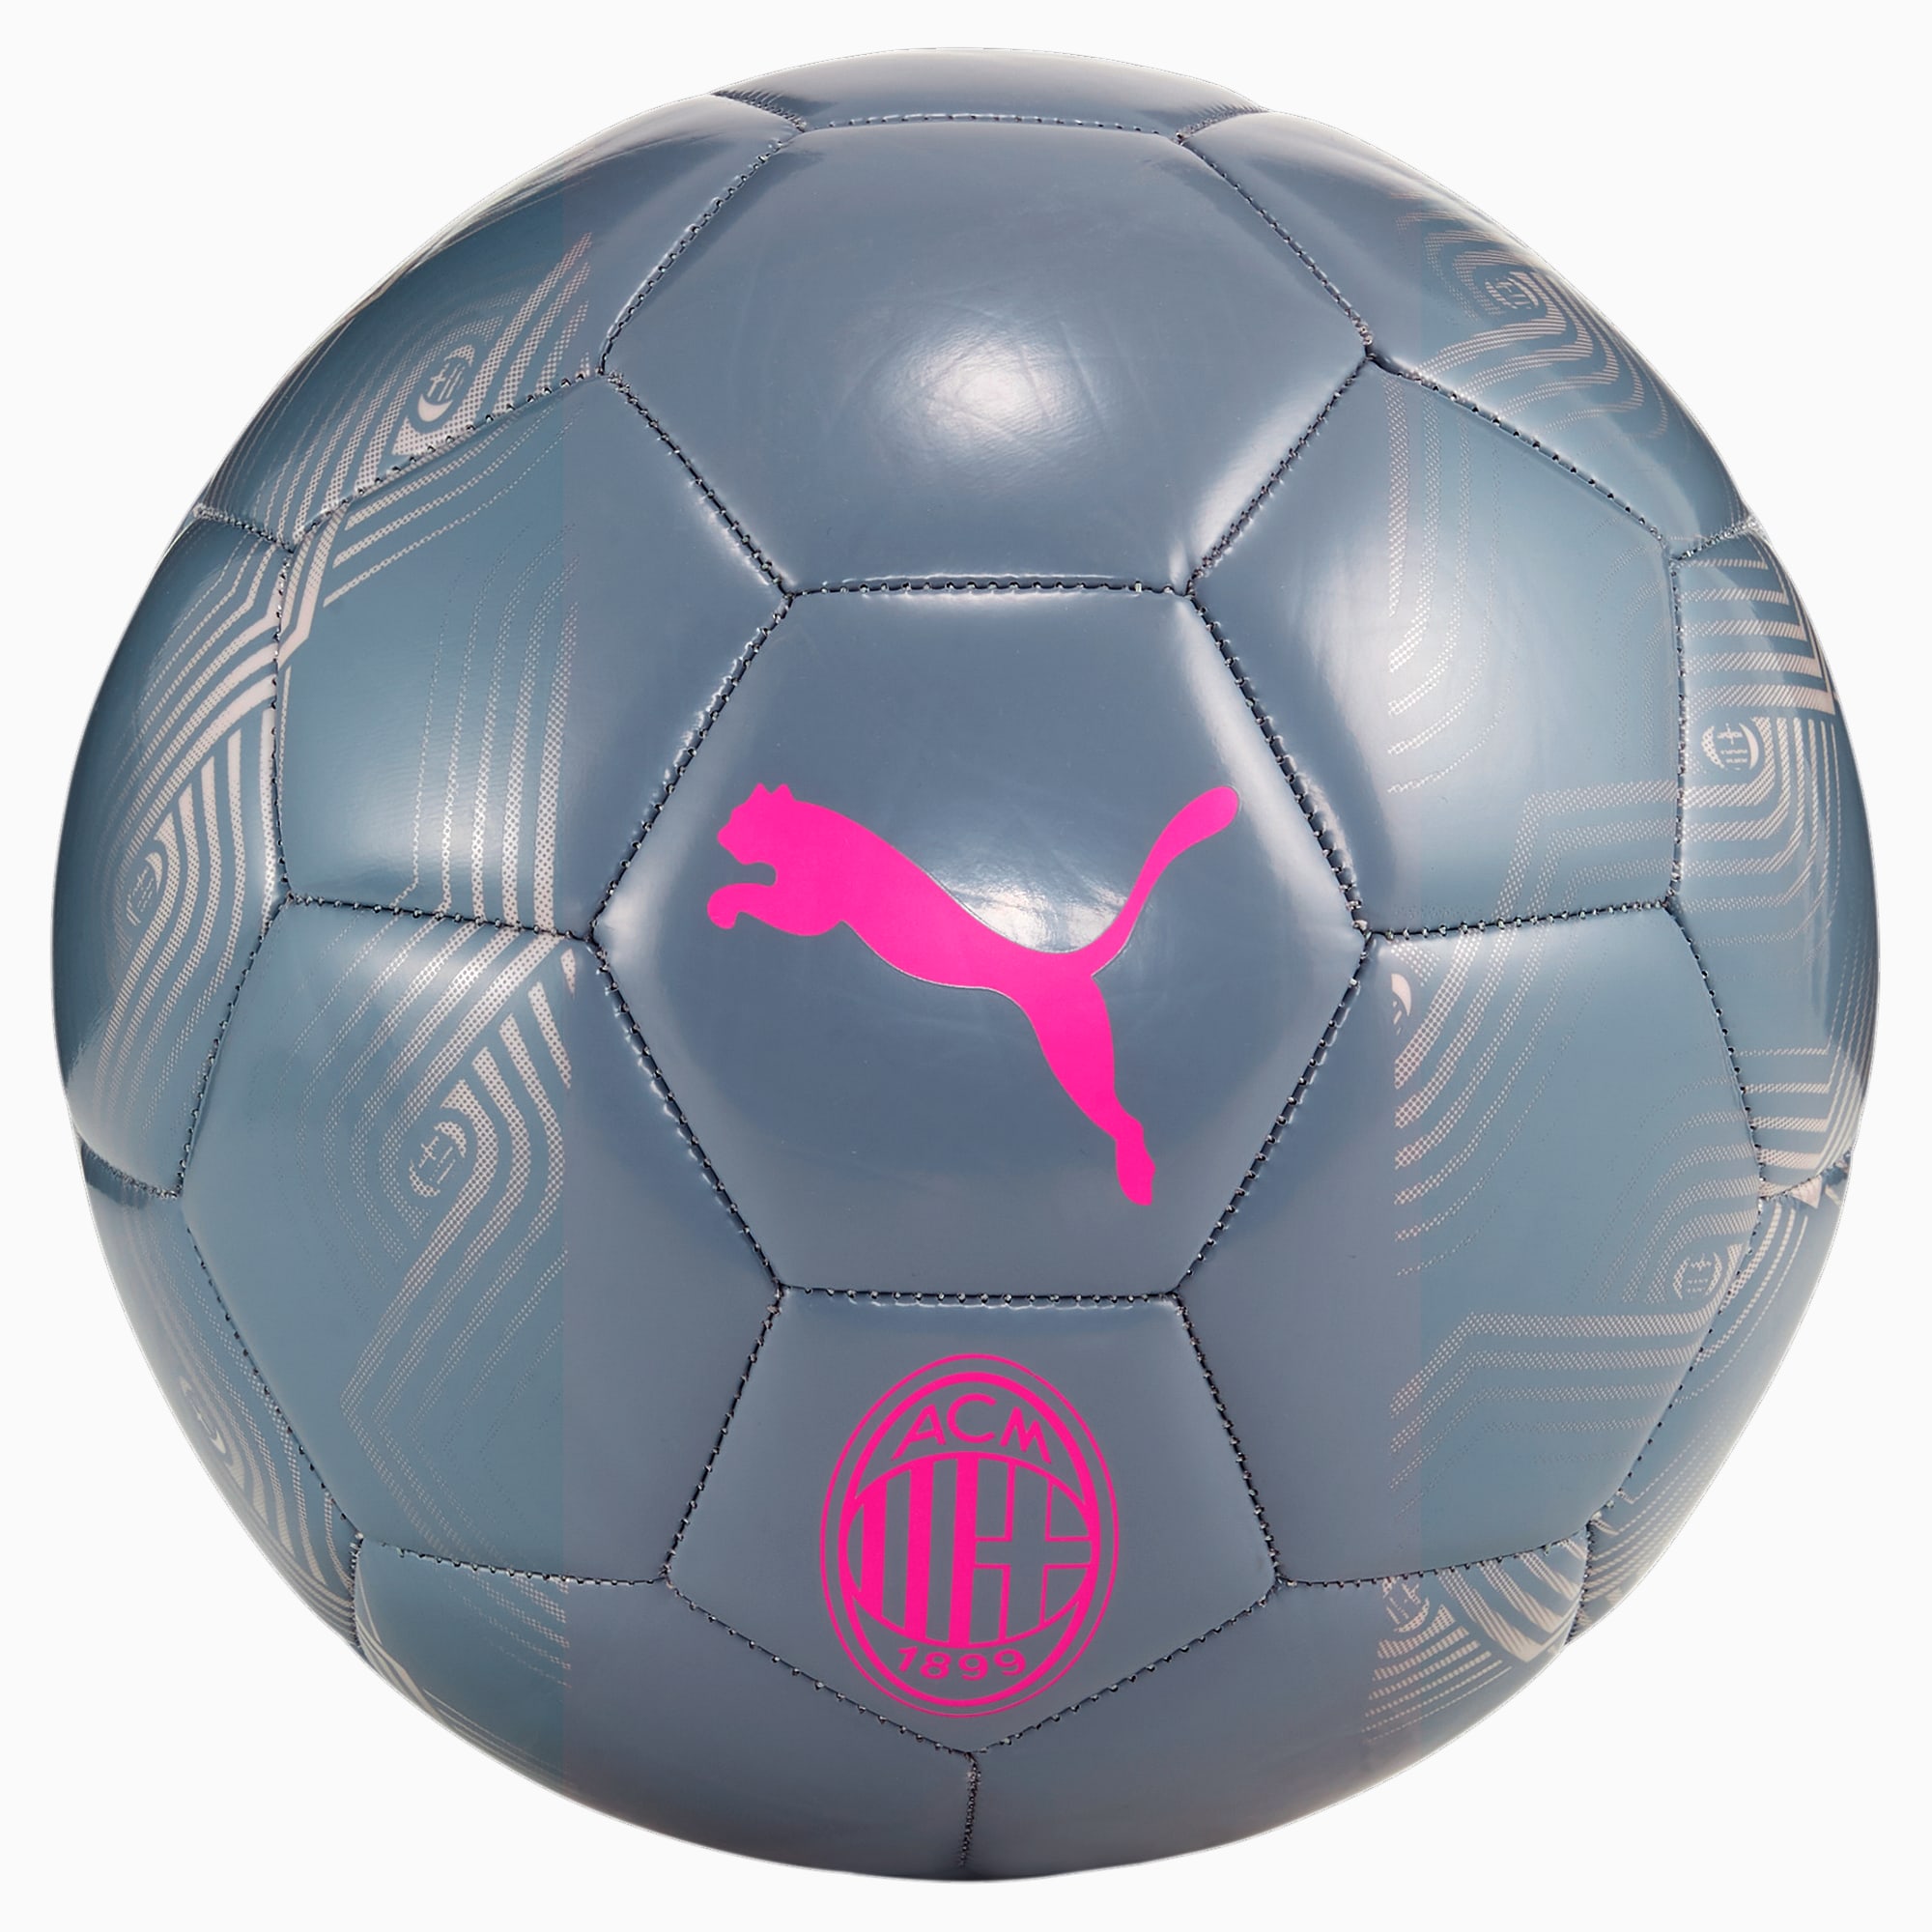 PUMA Balón De Fútbol Del AC Milan Ftblcore, Gris